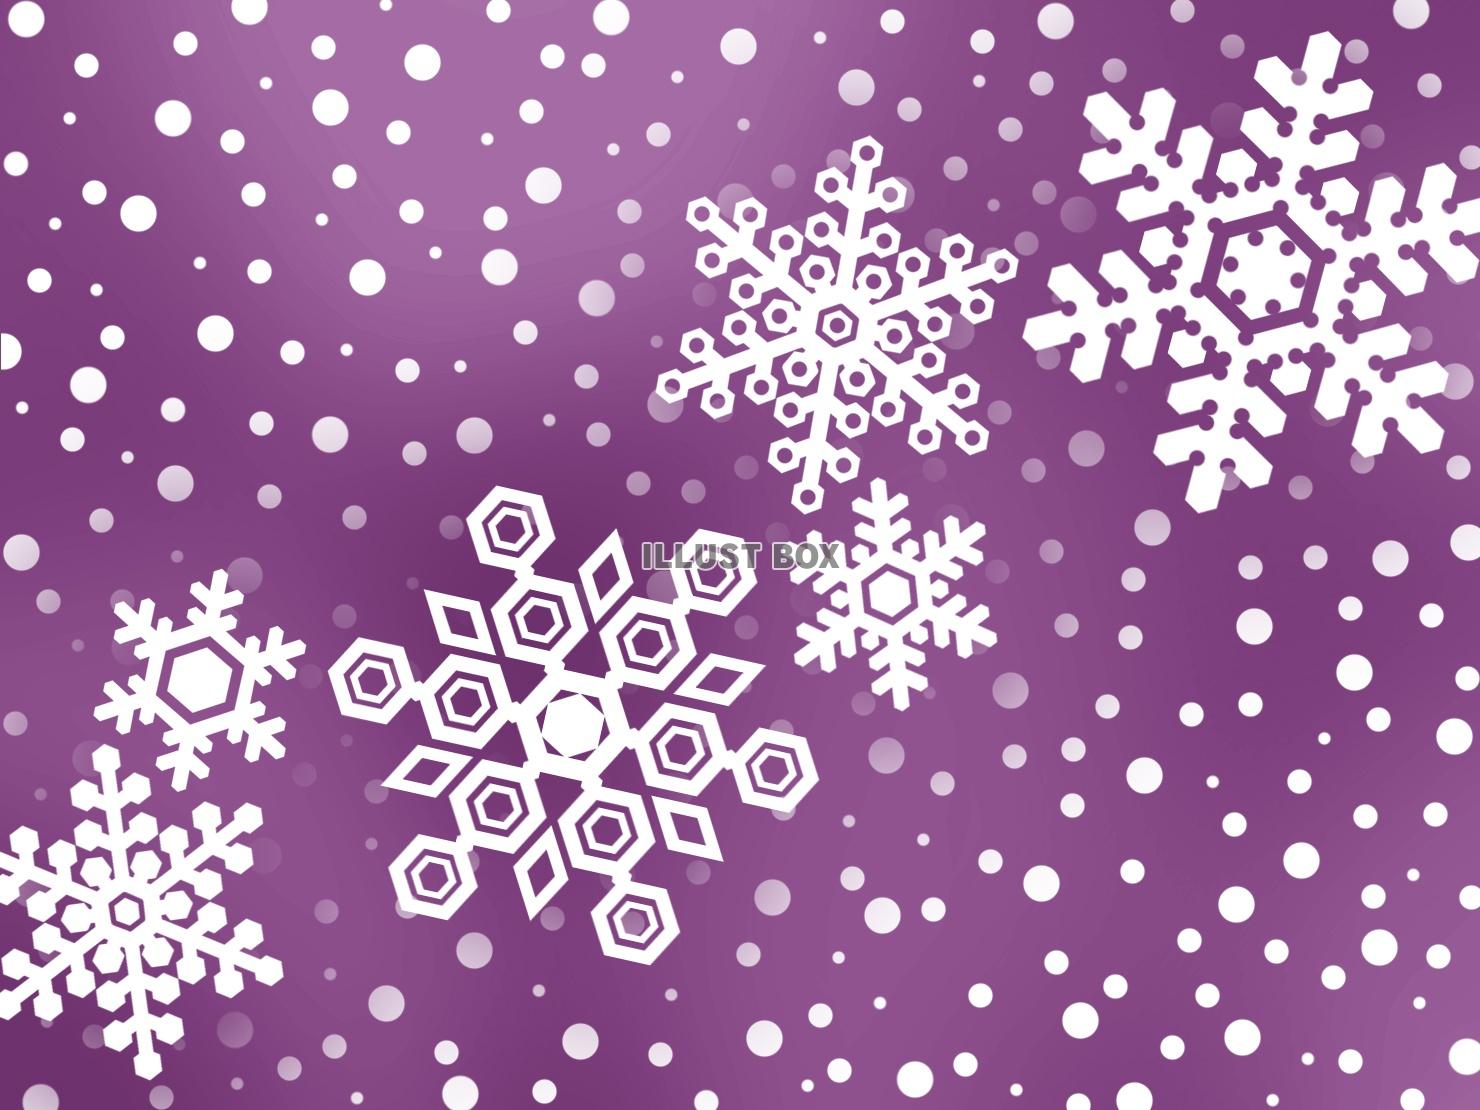 雪の結晶壁紙冬のイメージ背景素材イラスト